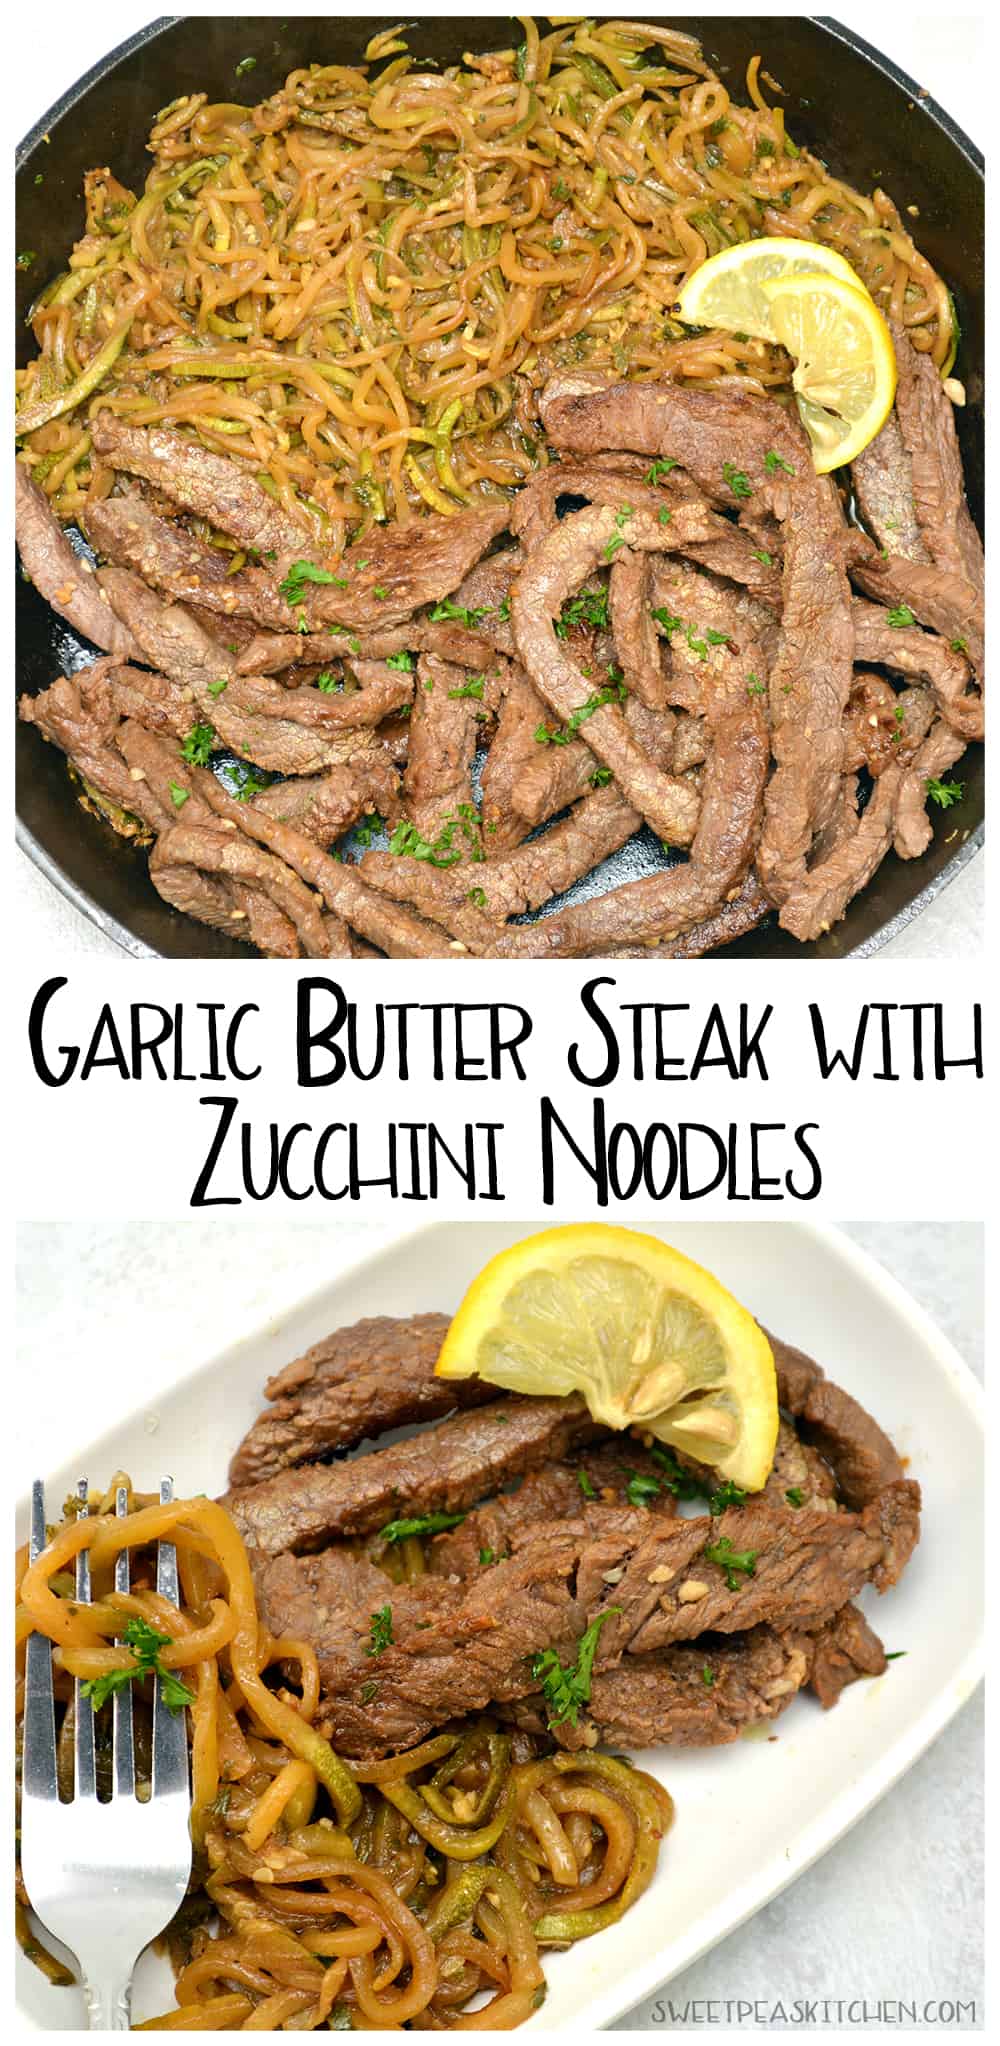 Garlic Butter Steak with Zucchini Noodles